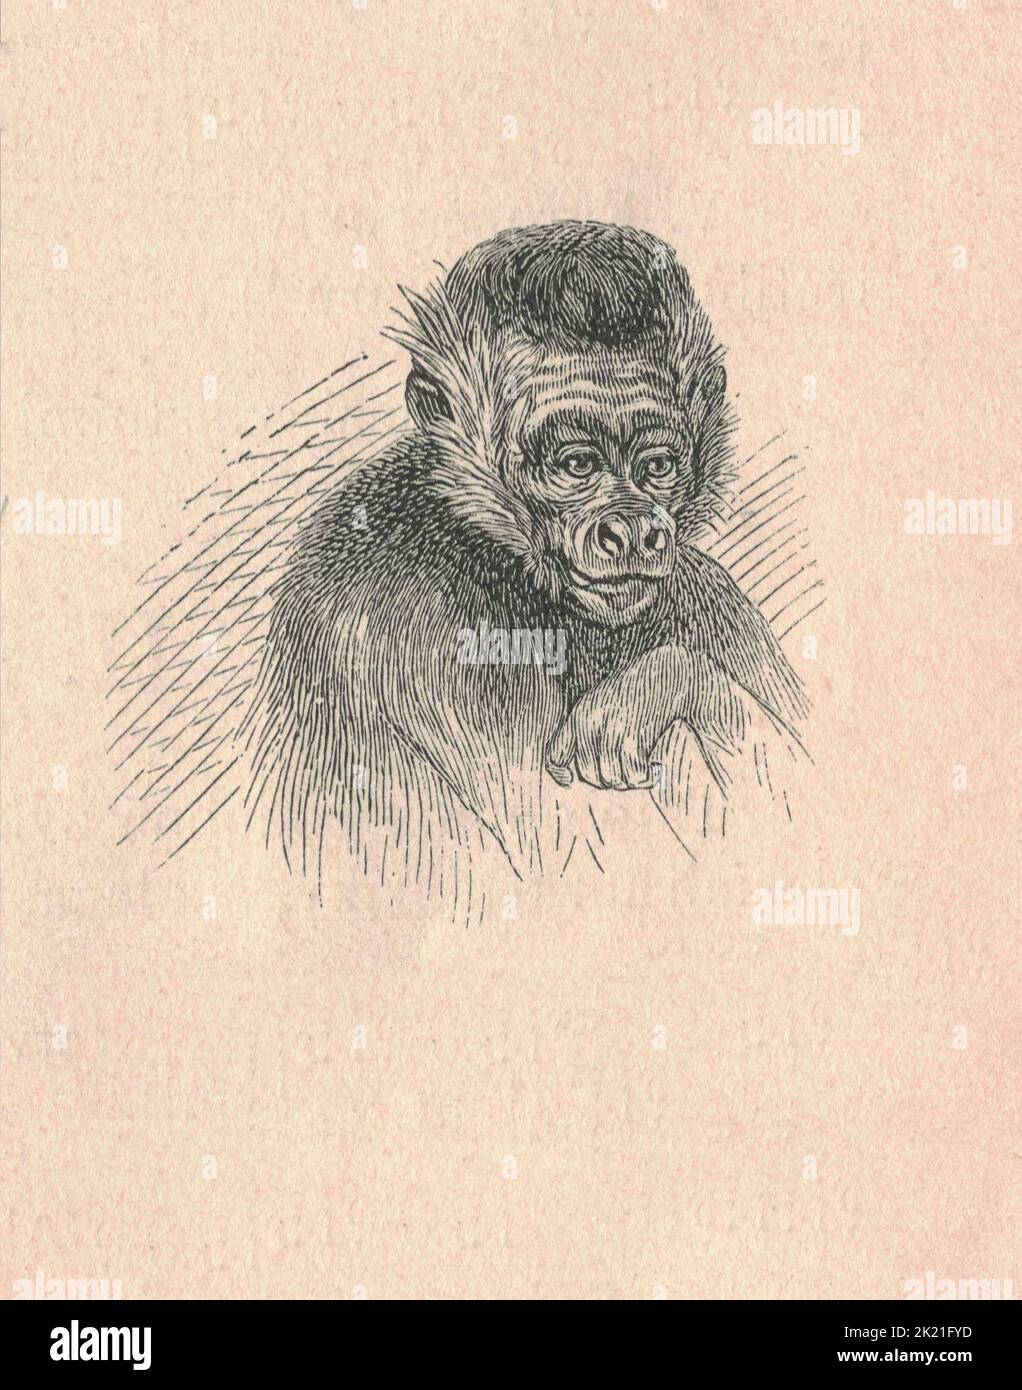 Antica illustrazione incisa di una testa di scimmia ragno. Illustrazione vintage di una testa di scimmia ragno. Antica immagine incisa di una testa di scimmia ragno. Foto Stock